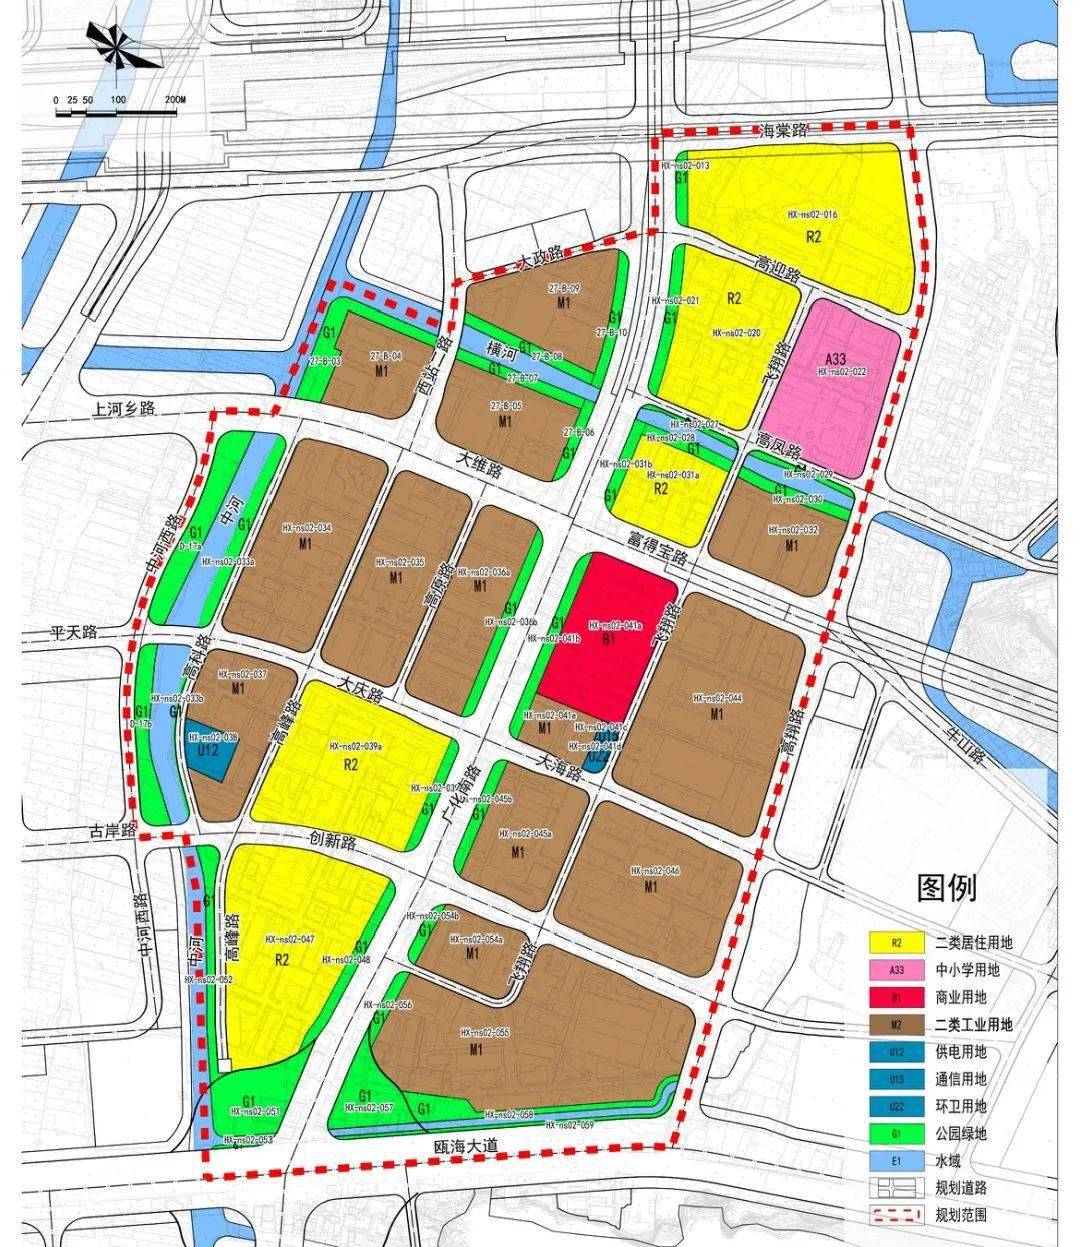 用地规划图 图自温州市自然资源和规划局官网